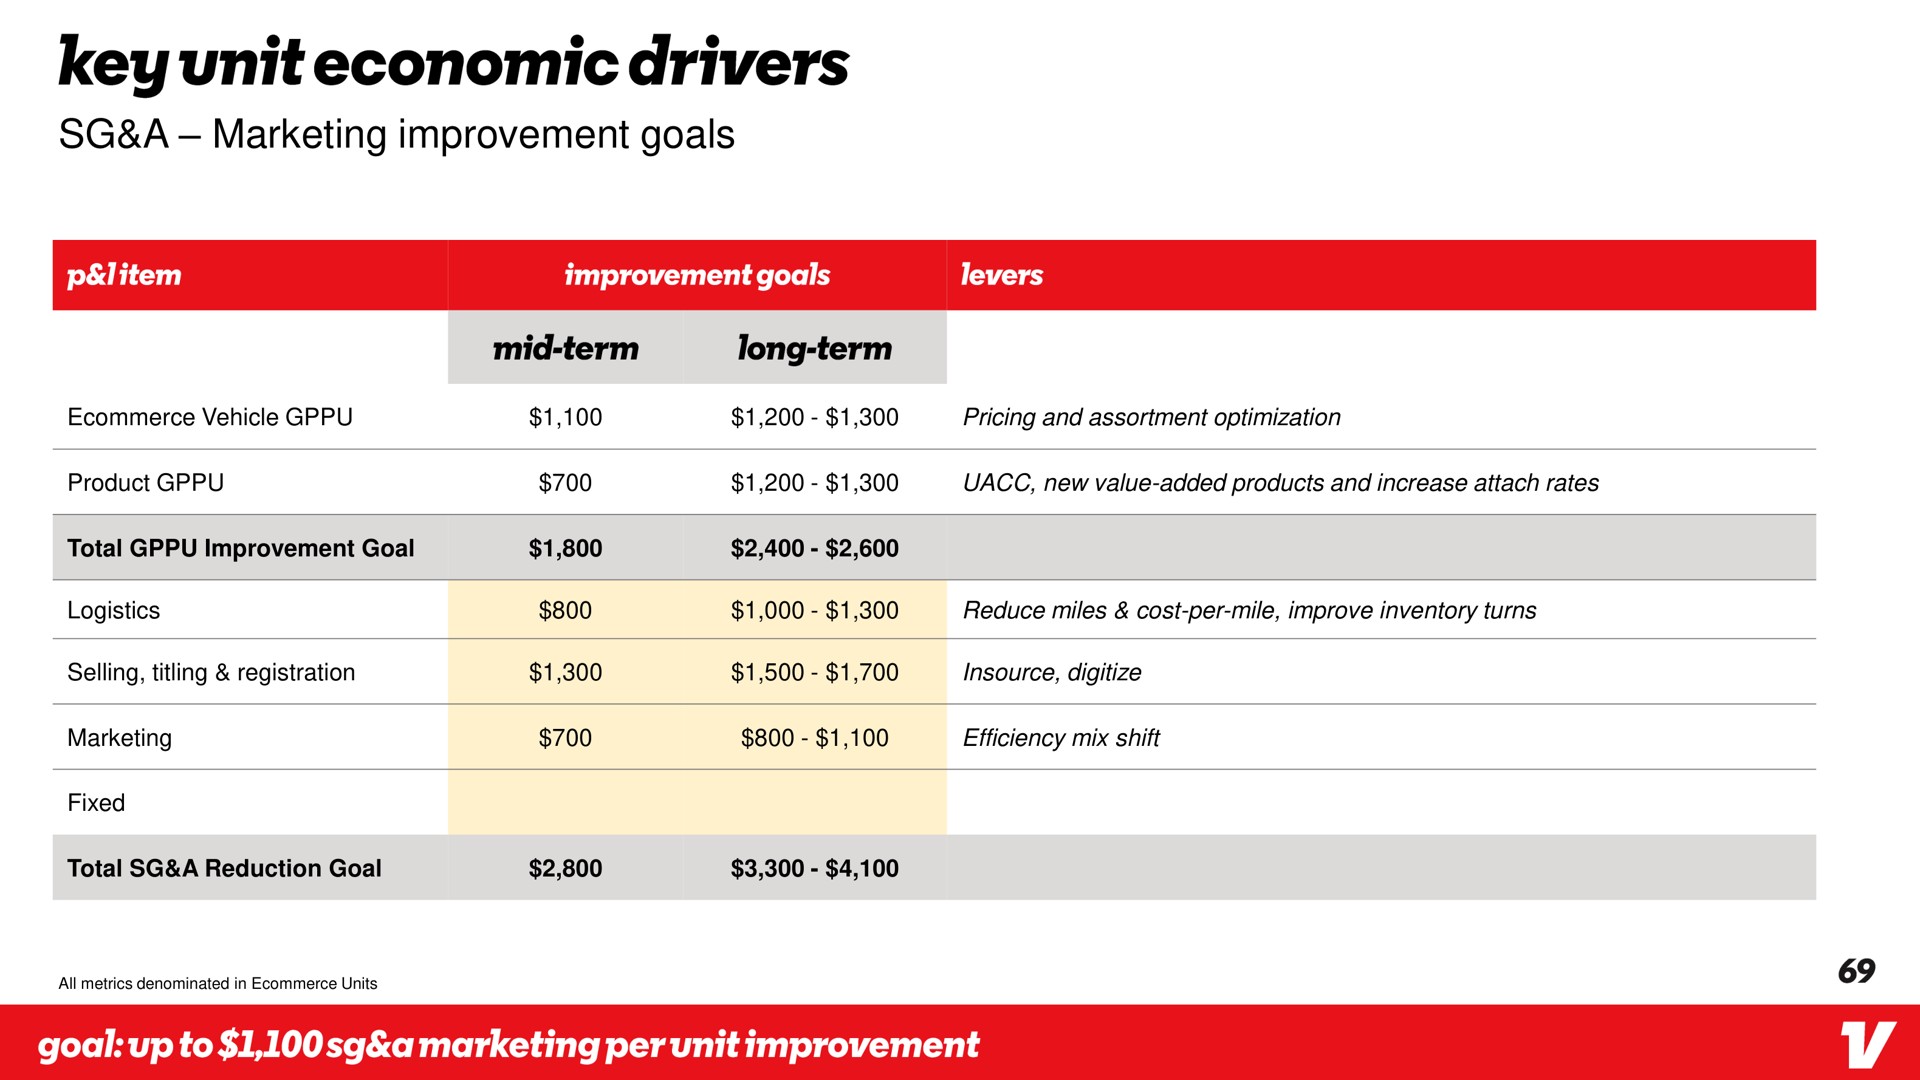 a marketing improvement goals key unit economic drivers | Vroom